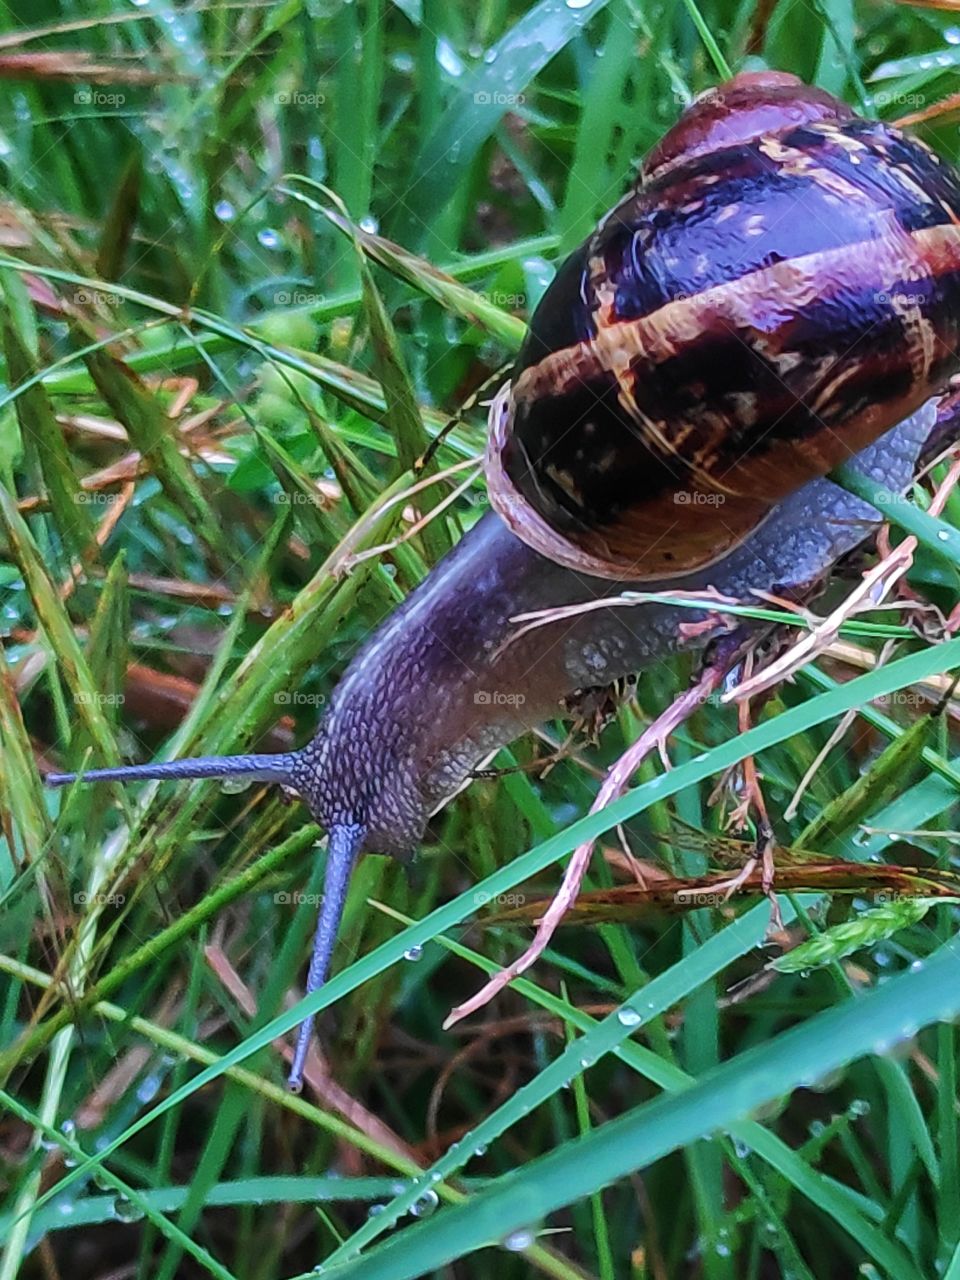 Cute little snail on grass